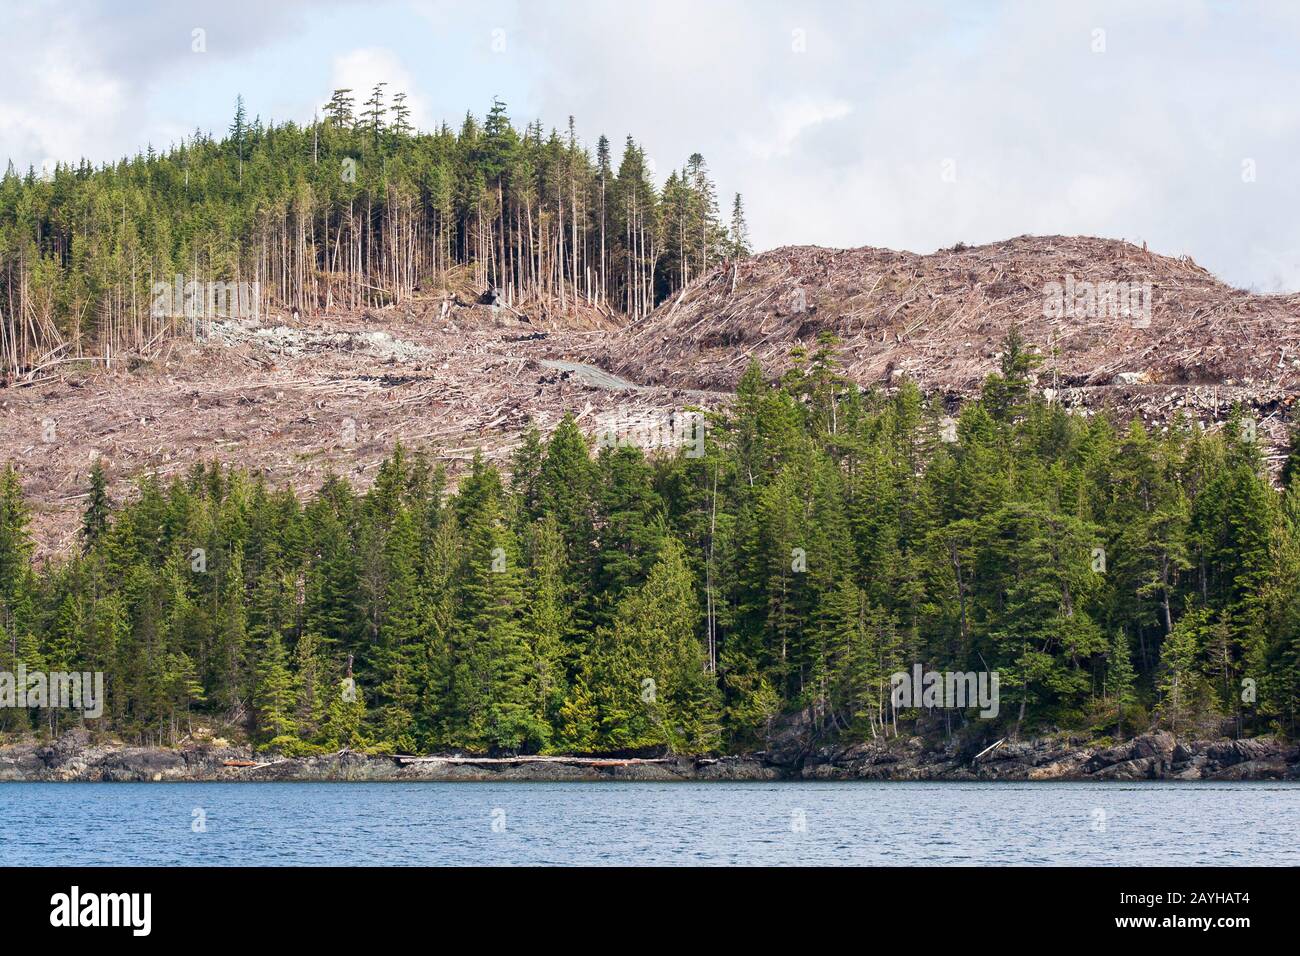 Eine Holzfällerstraße durchschneidet einen gut sichtbaren, mit umgestürzten Bäumen bewachsenen, klaren Wald an einem Hang in der Küste British Columbias (Blick auf den Meeresspiegel). Stockfoto